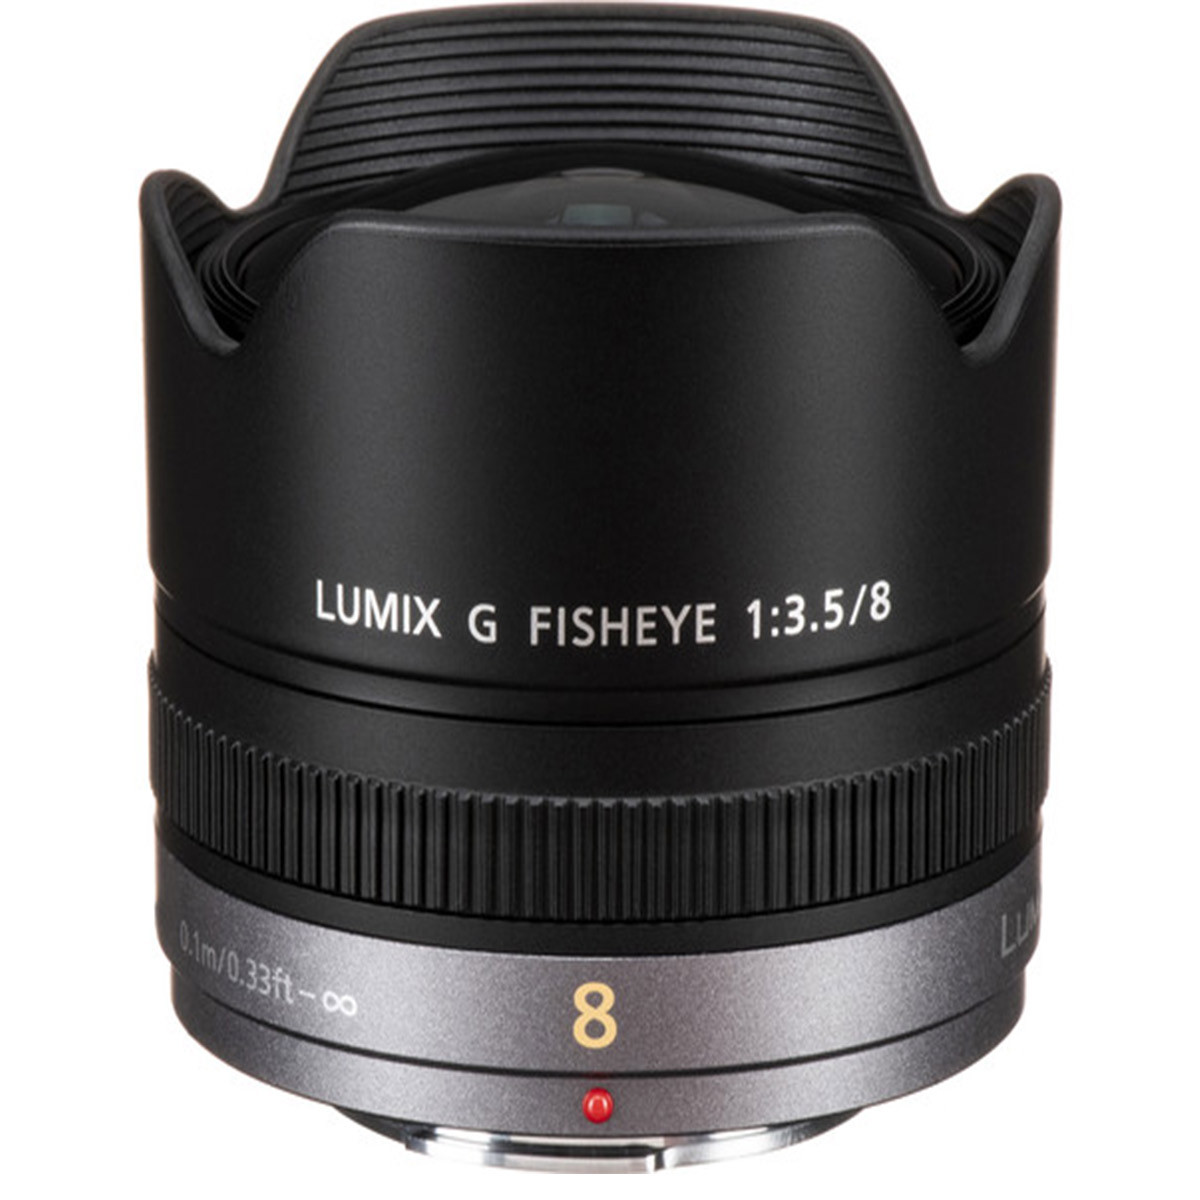 レンズ(単焦点)LUMIX G FISHEYE 8mm / F3.5